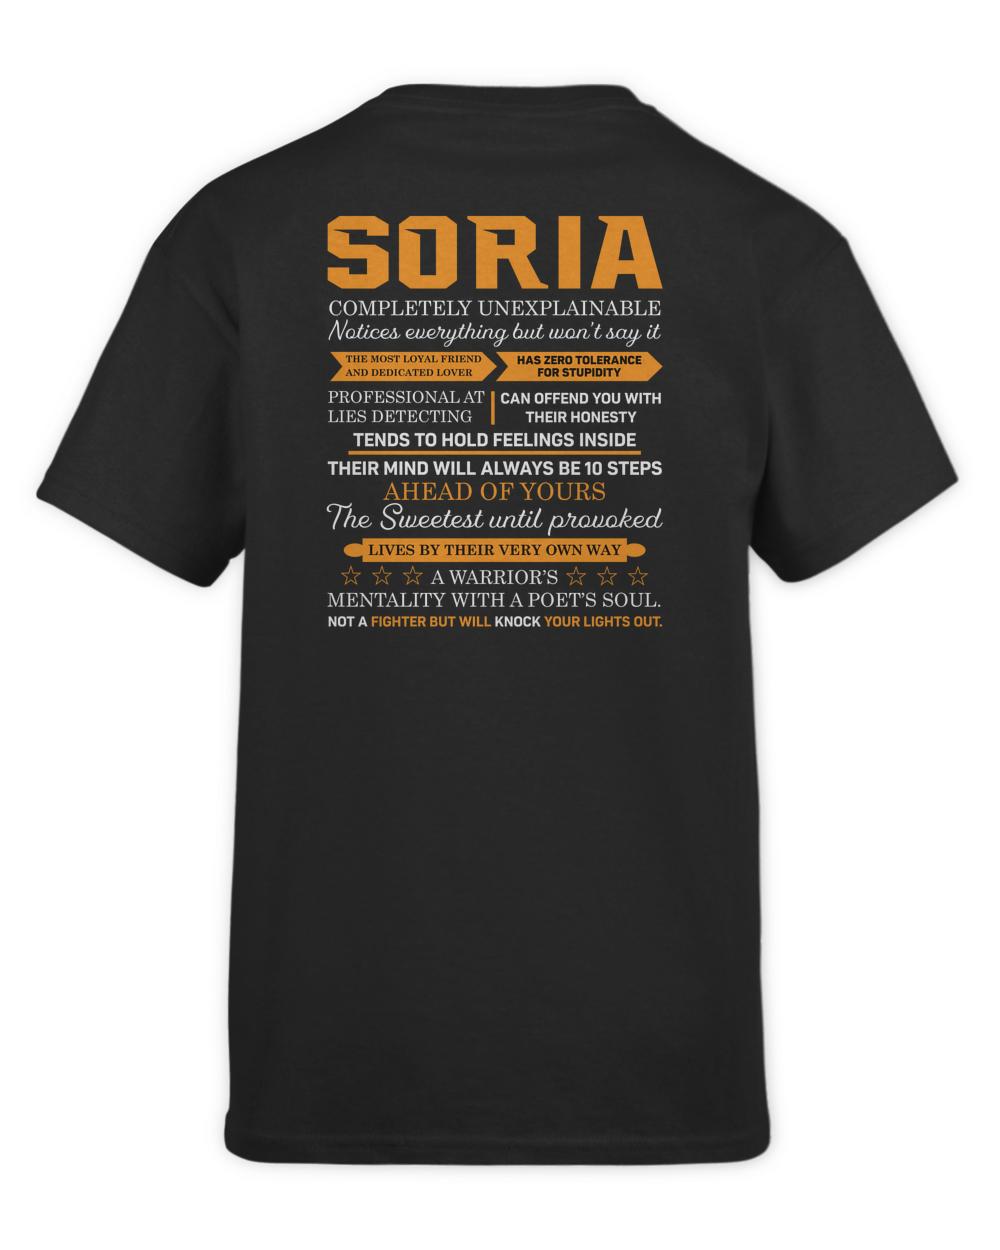 SORIA-A8-N1